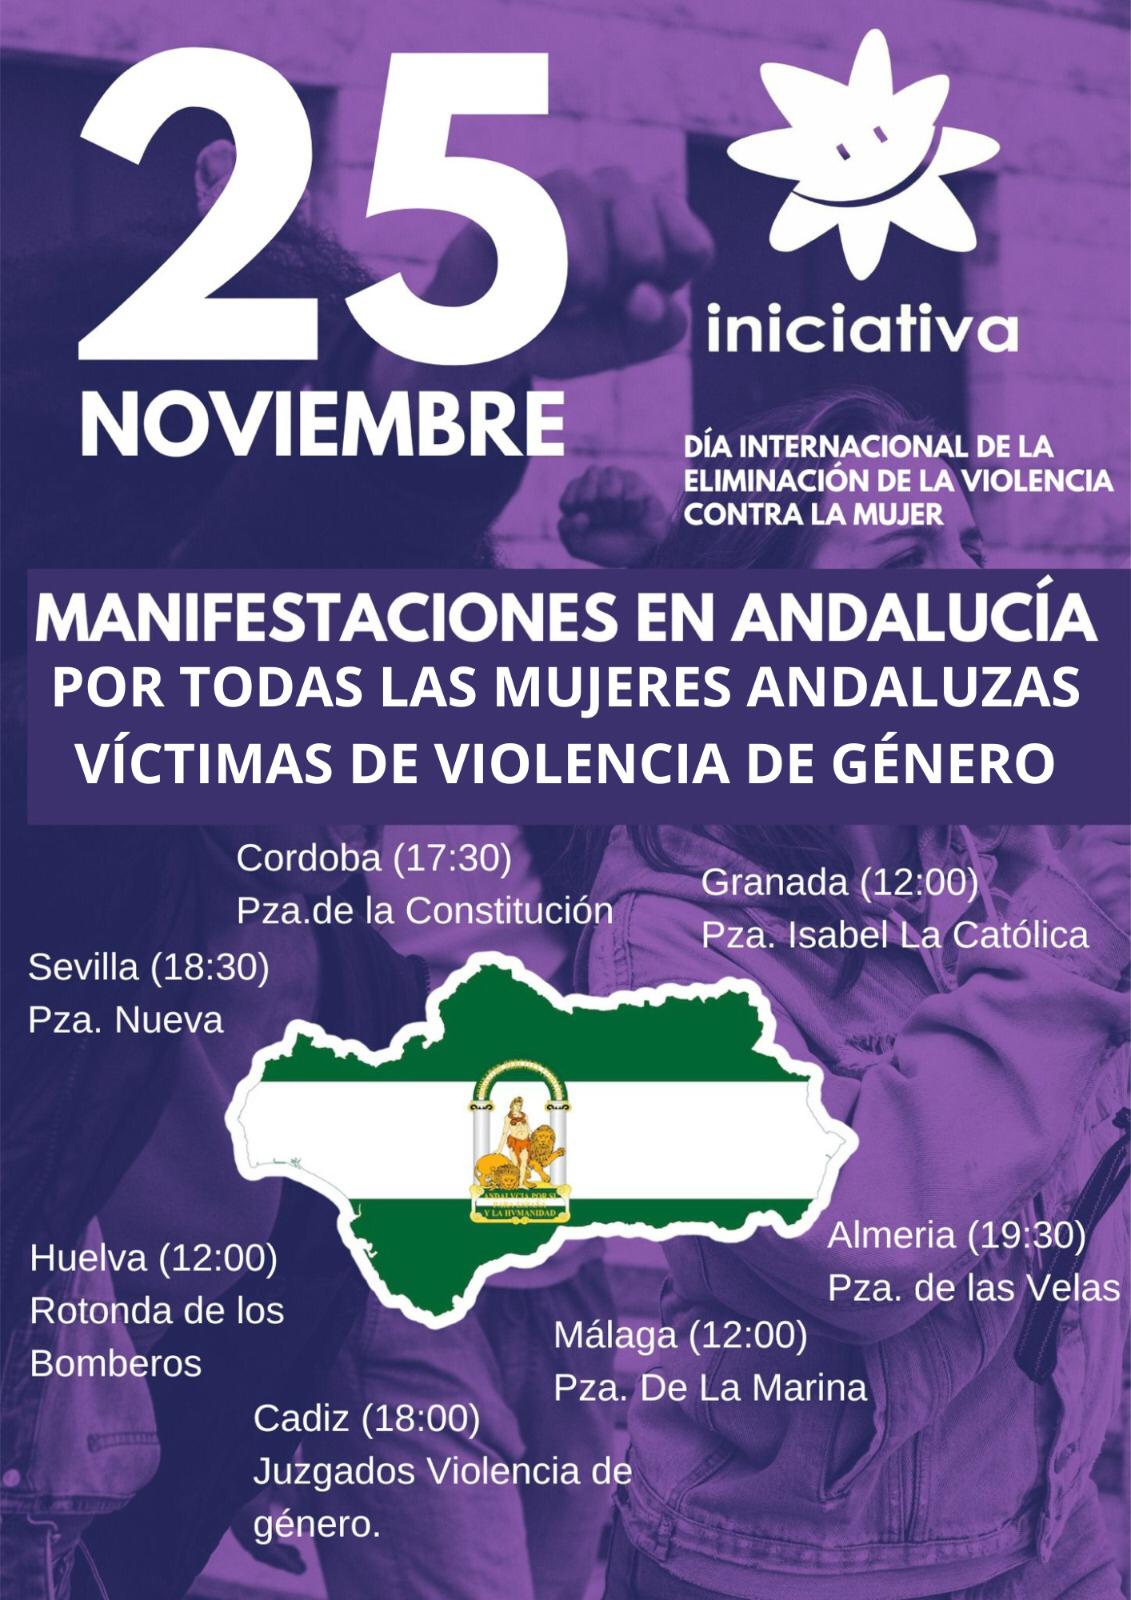 Manifestaciones en toda Andalucía este 25 de noviembre por todas las mujeres andaluzas víctimas de violencia de género secundadas por Iniciativa del Pueblo Andaluz